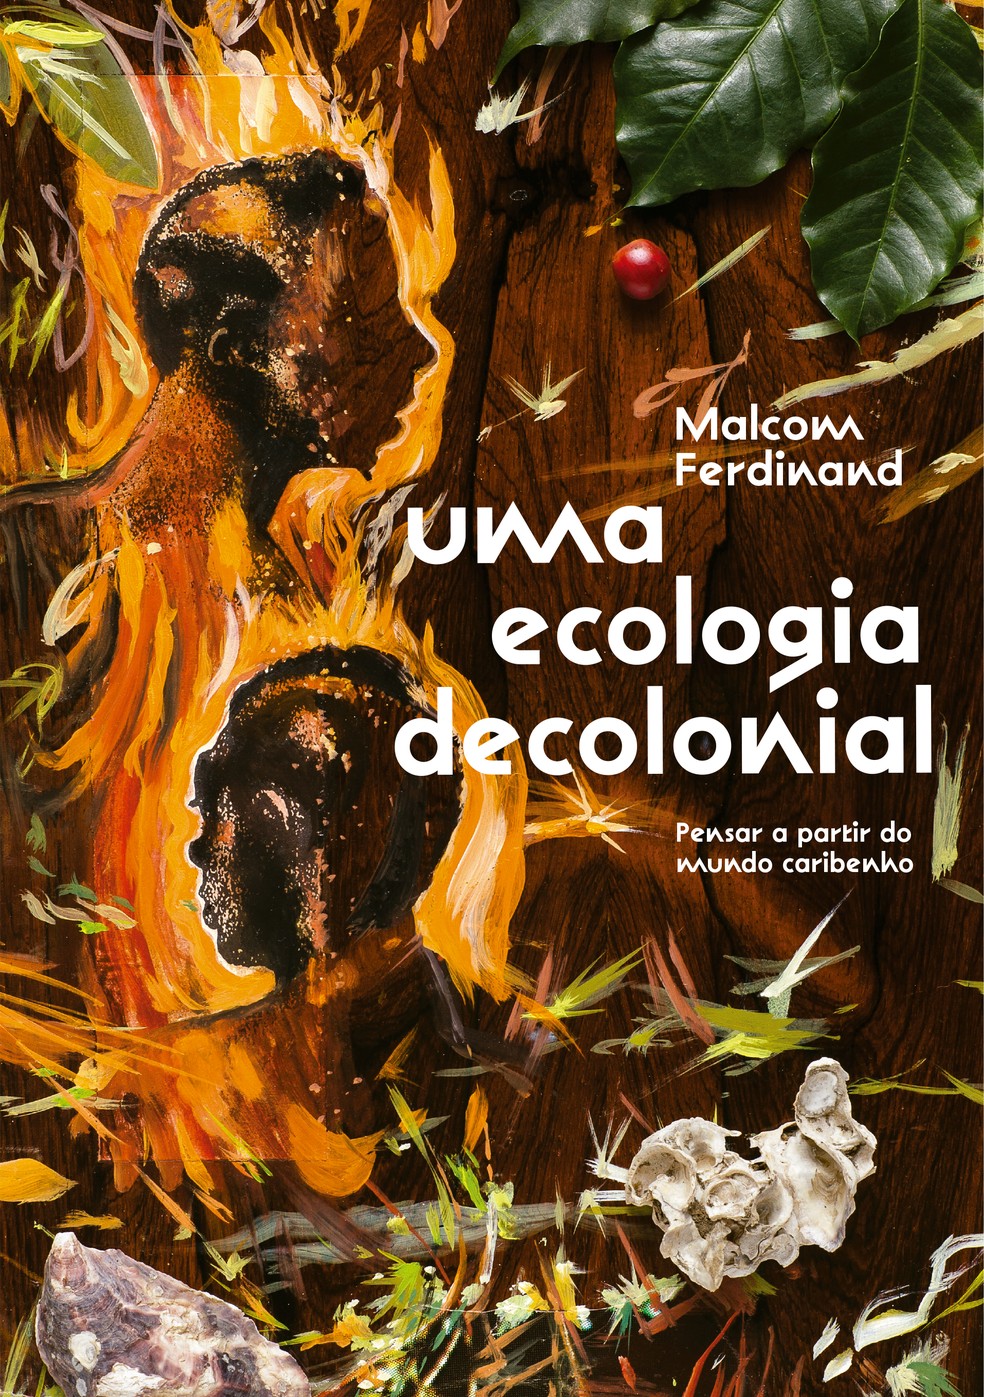 Capa do livro "Uma ecologia decolonial", do filósofo franco-caribenho Malcom Ferdinand, publicado pela Ubu — Foto: Reprodução